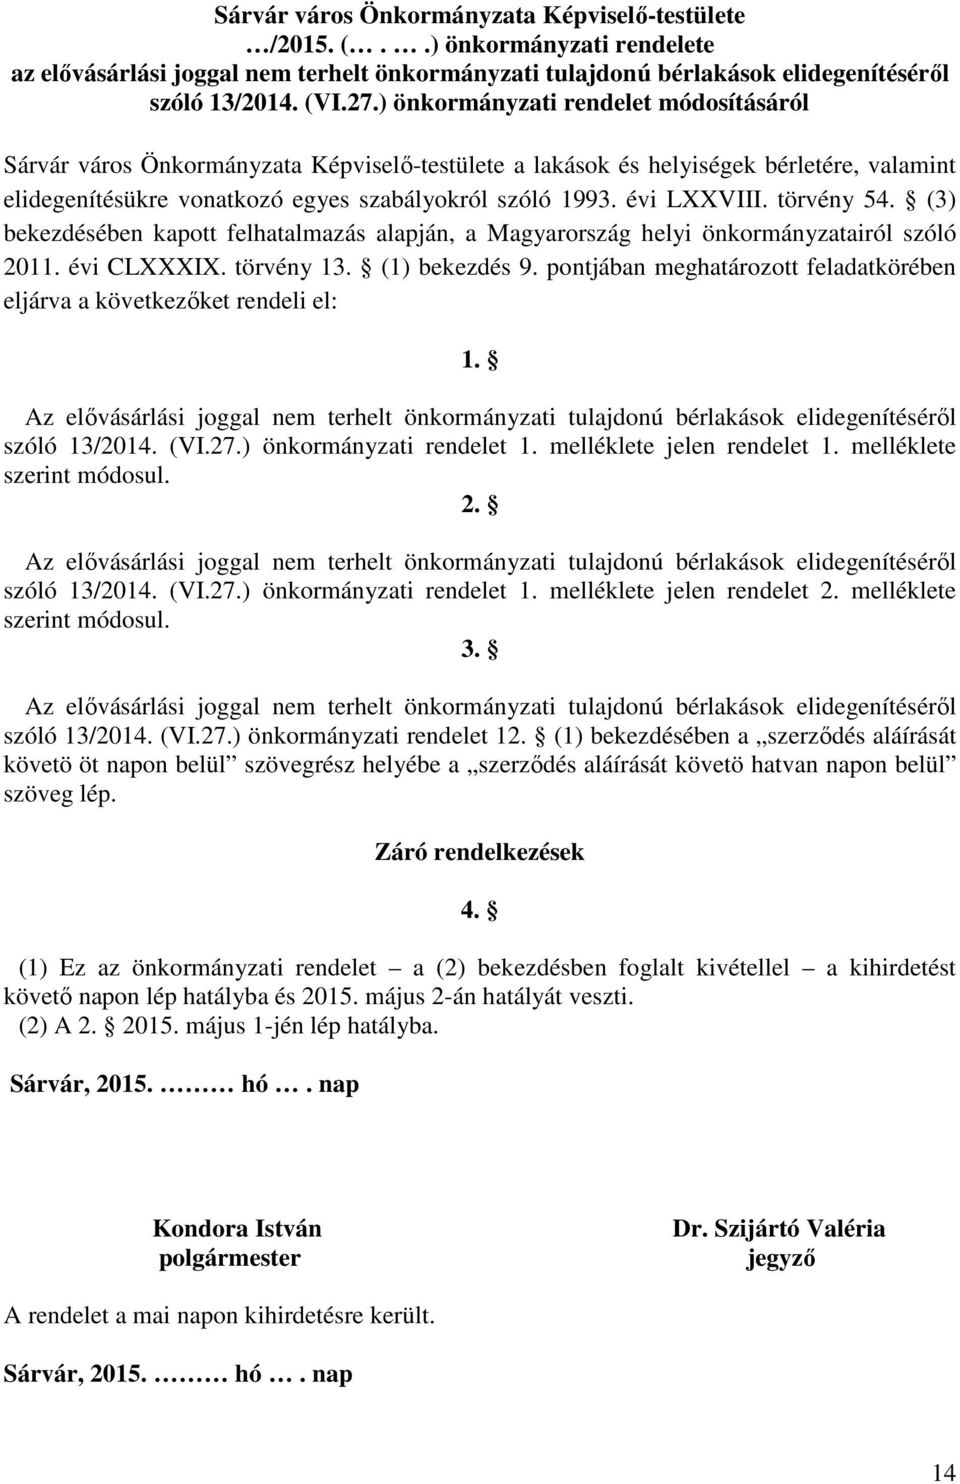 törvény 54. (3) bekezdésében kapott felhatalmazás alapján, a Magyarország helyi önkormányzatairól szóló 2011. évi CLXXXIX. törvény 13. (1) bekezdés 9.